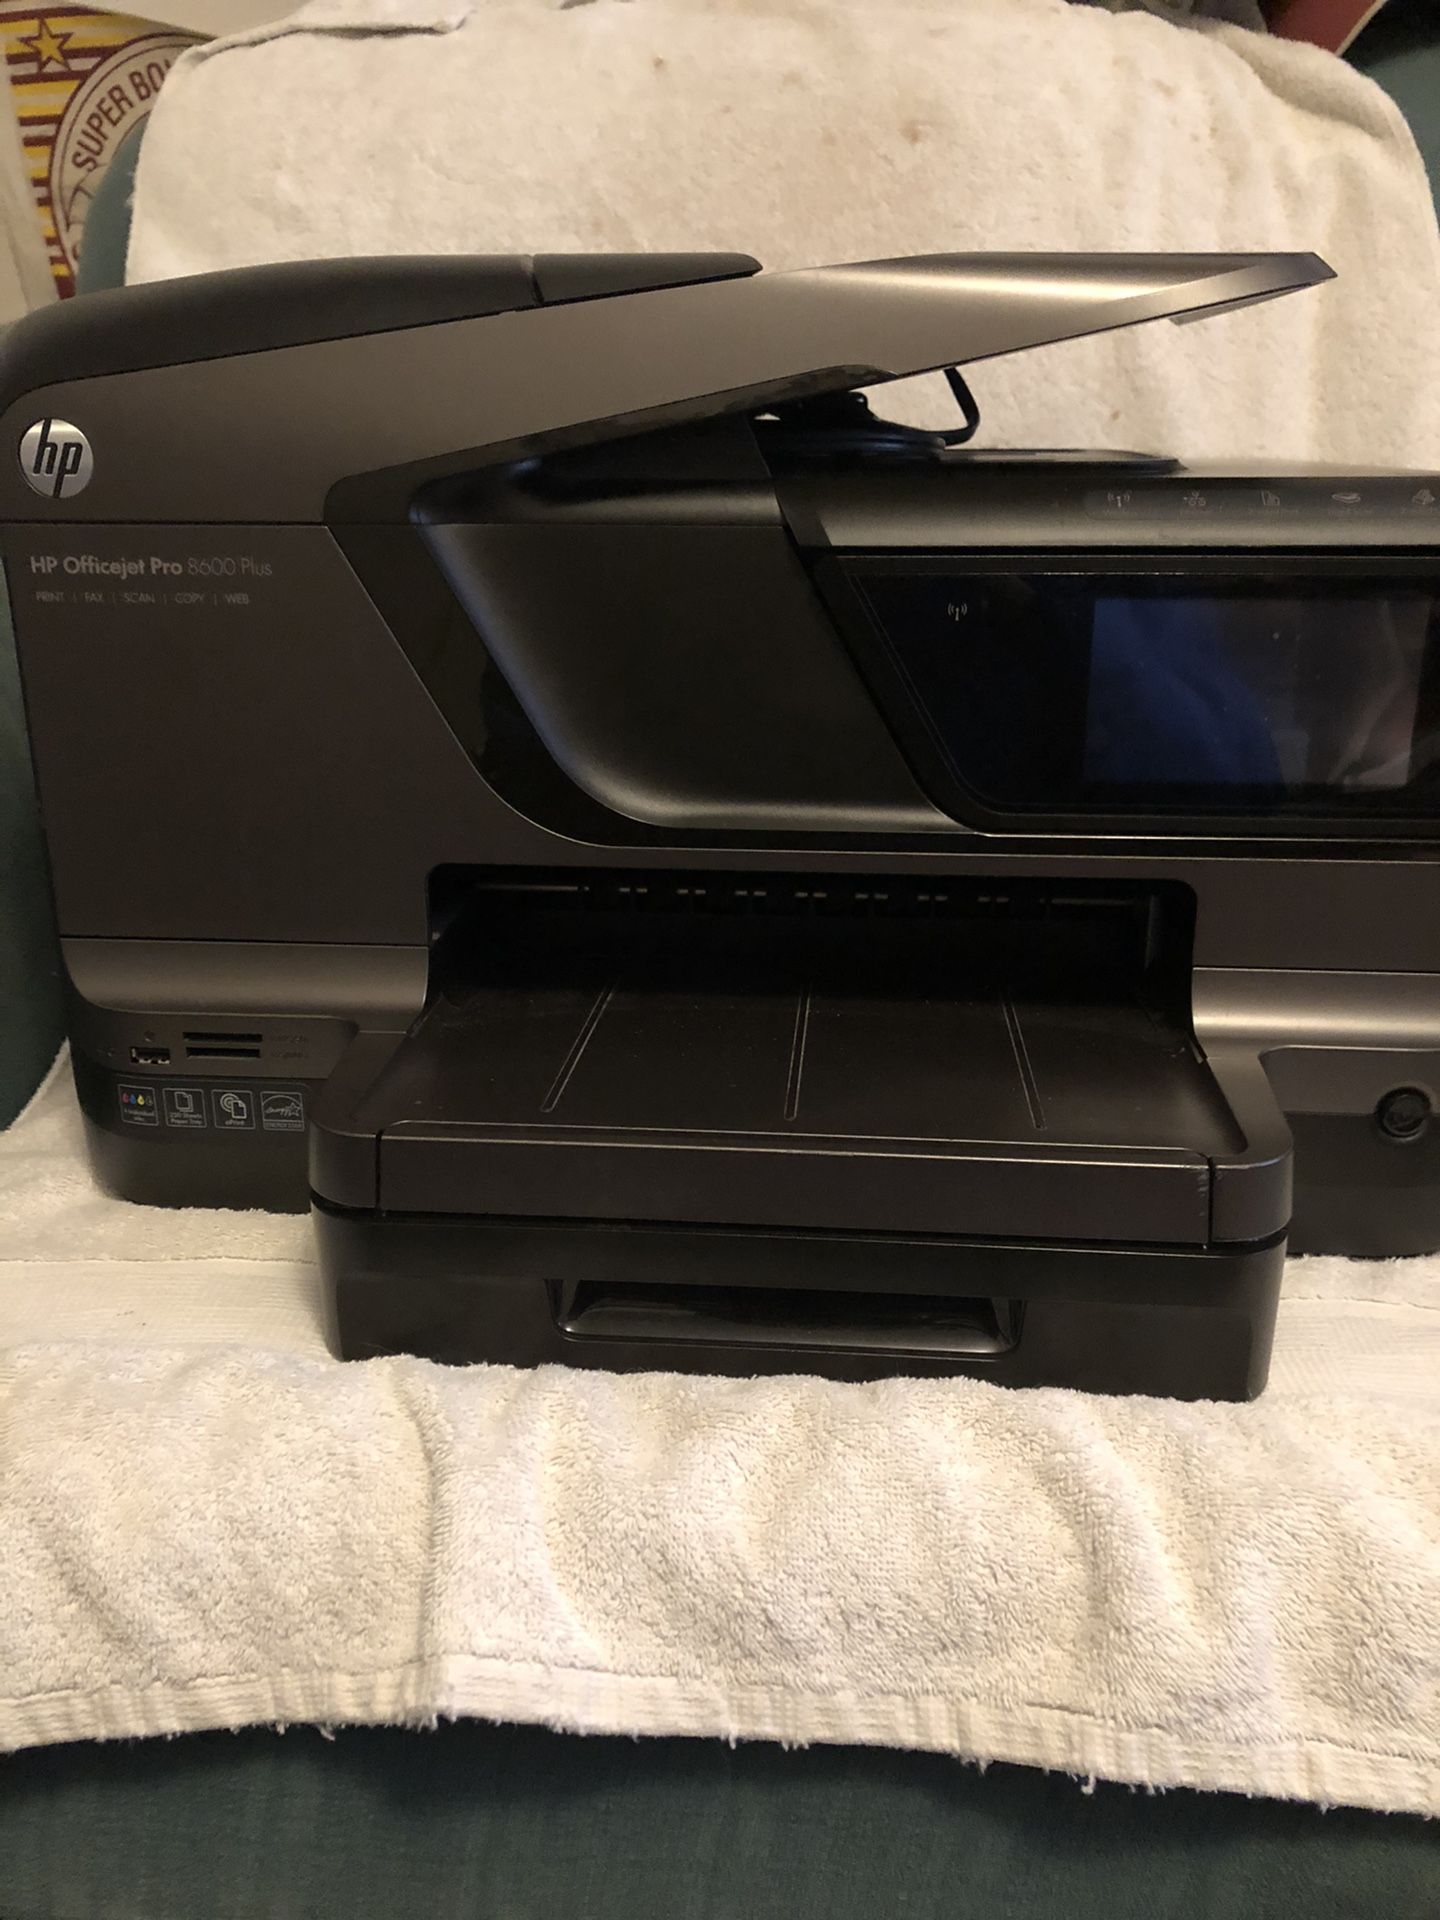 HP Officejet Pro 8600 Plus All-in-One Inkjet Wireless Printer